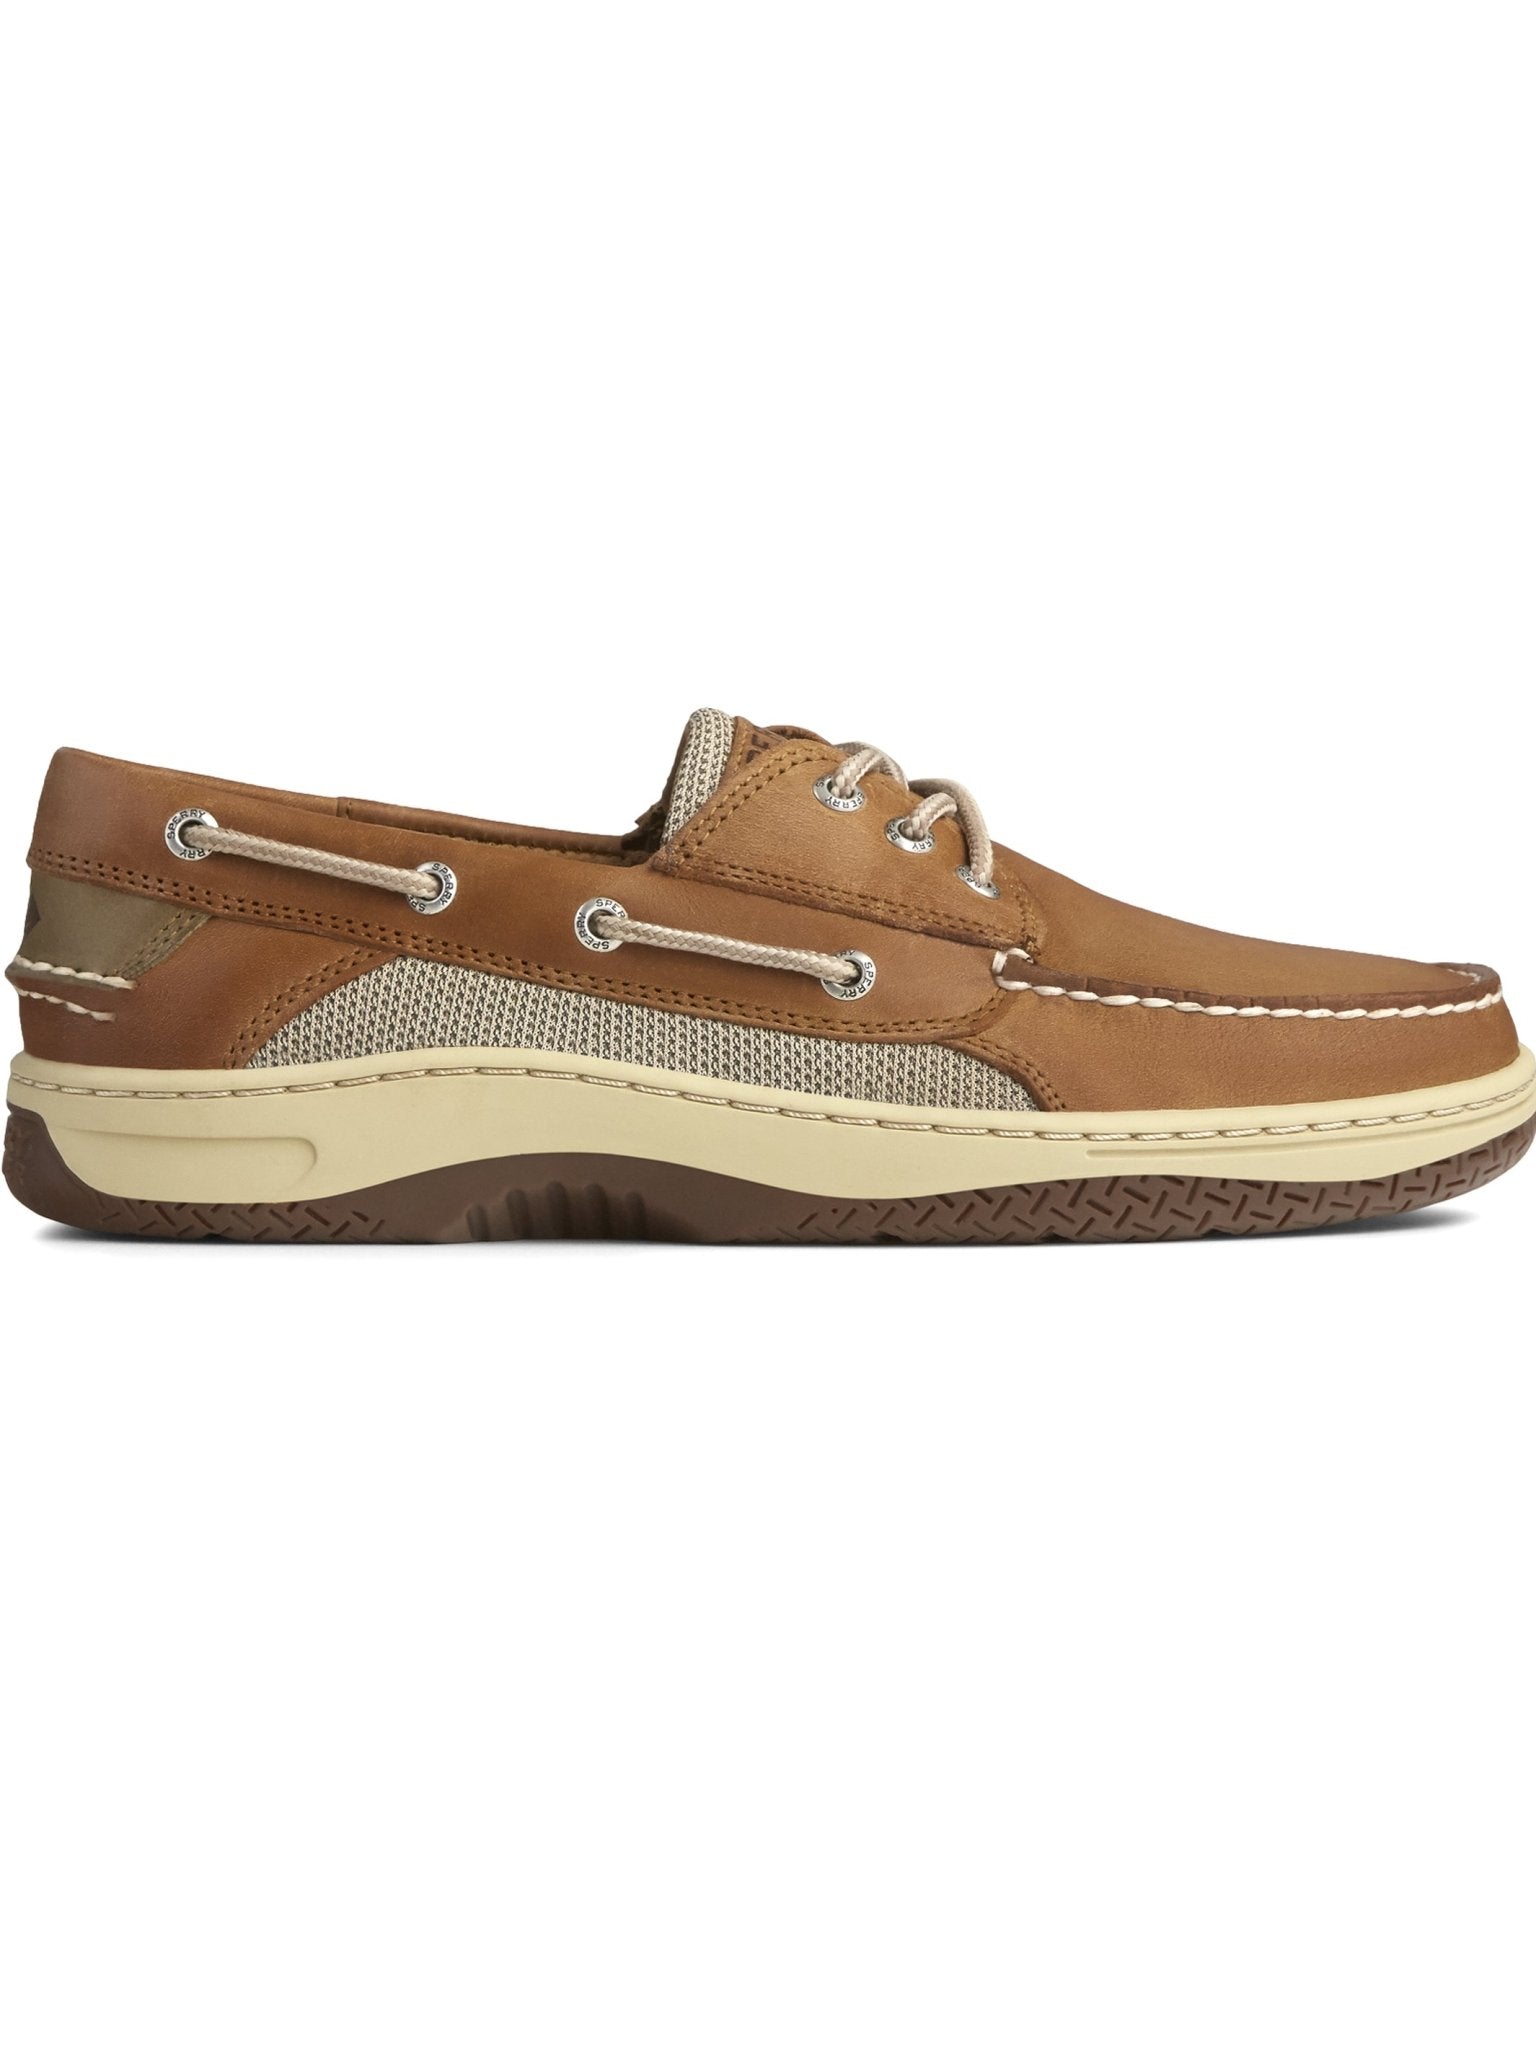 4elementsclothingSperrySperry - Men's boat shoe - Billfish 3-Eye Boat Shoe Dark Tan - Deck shoesShoes